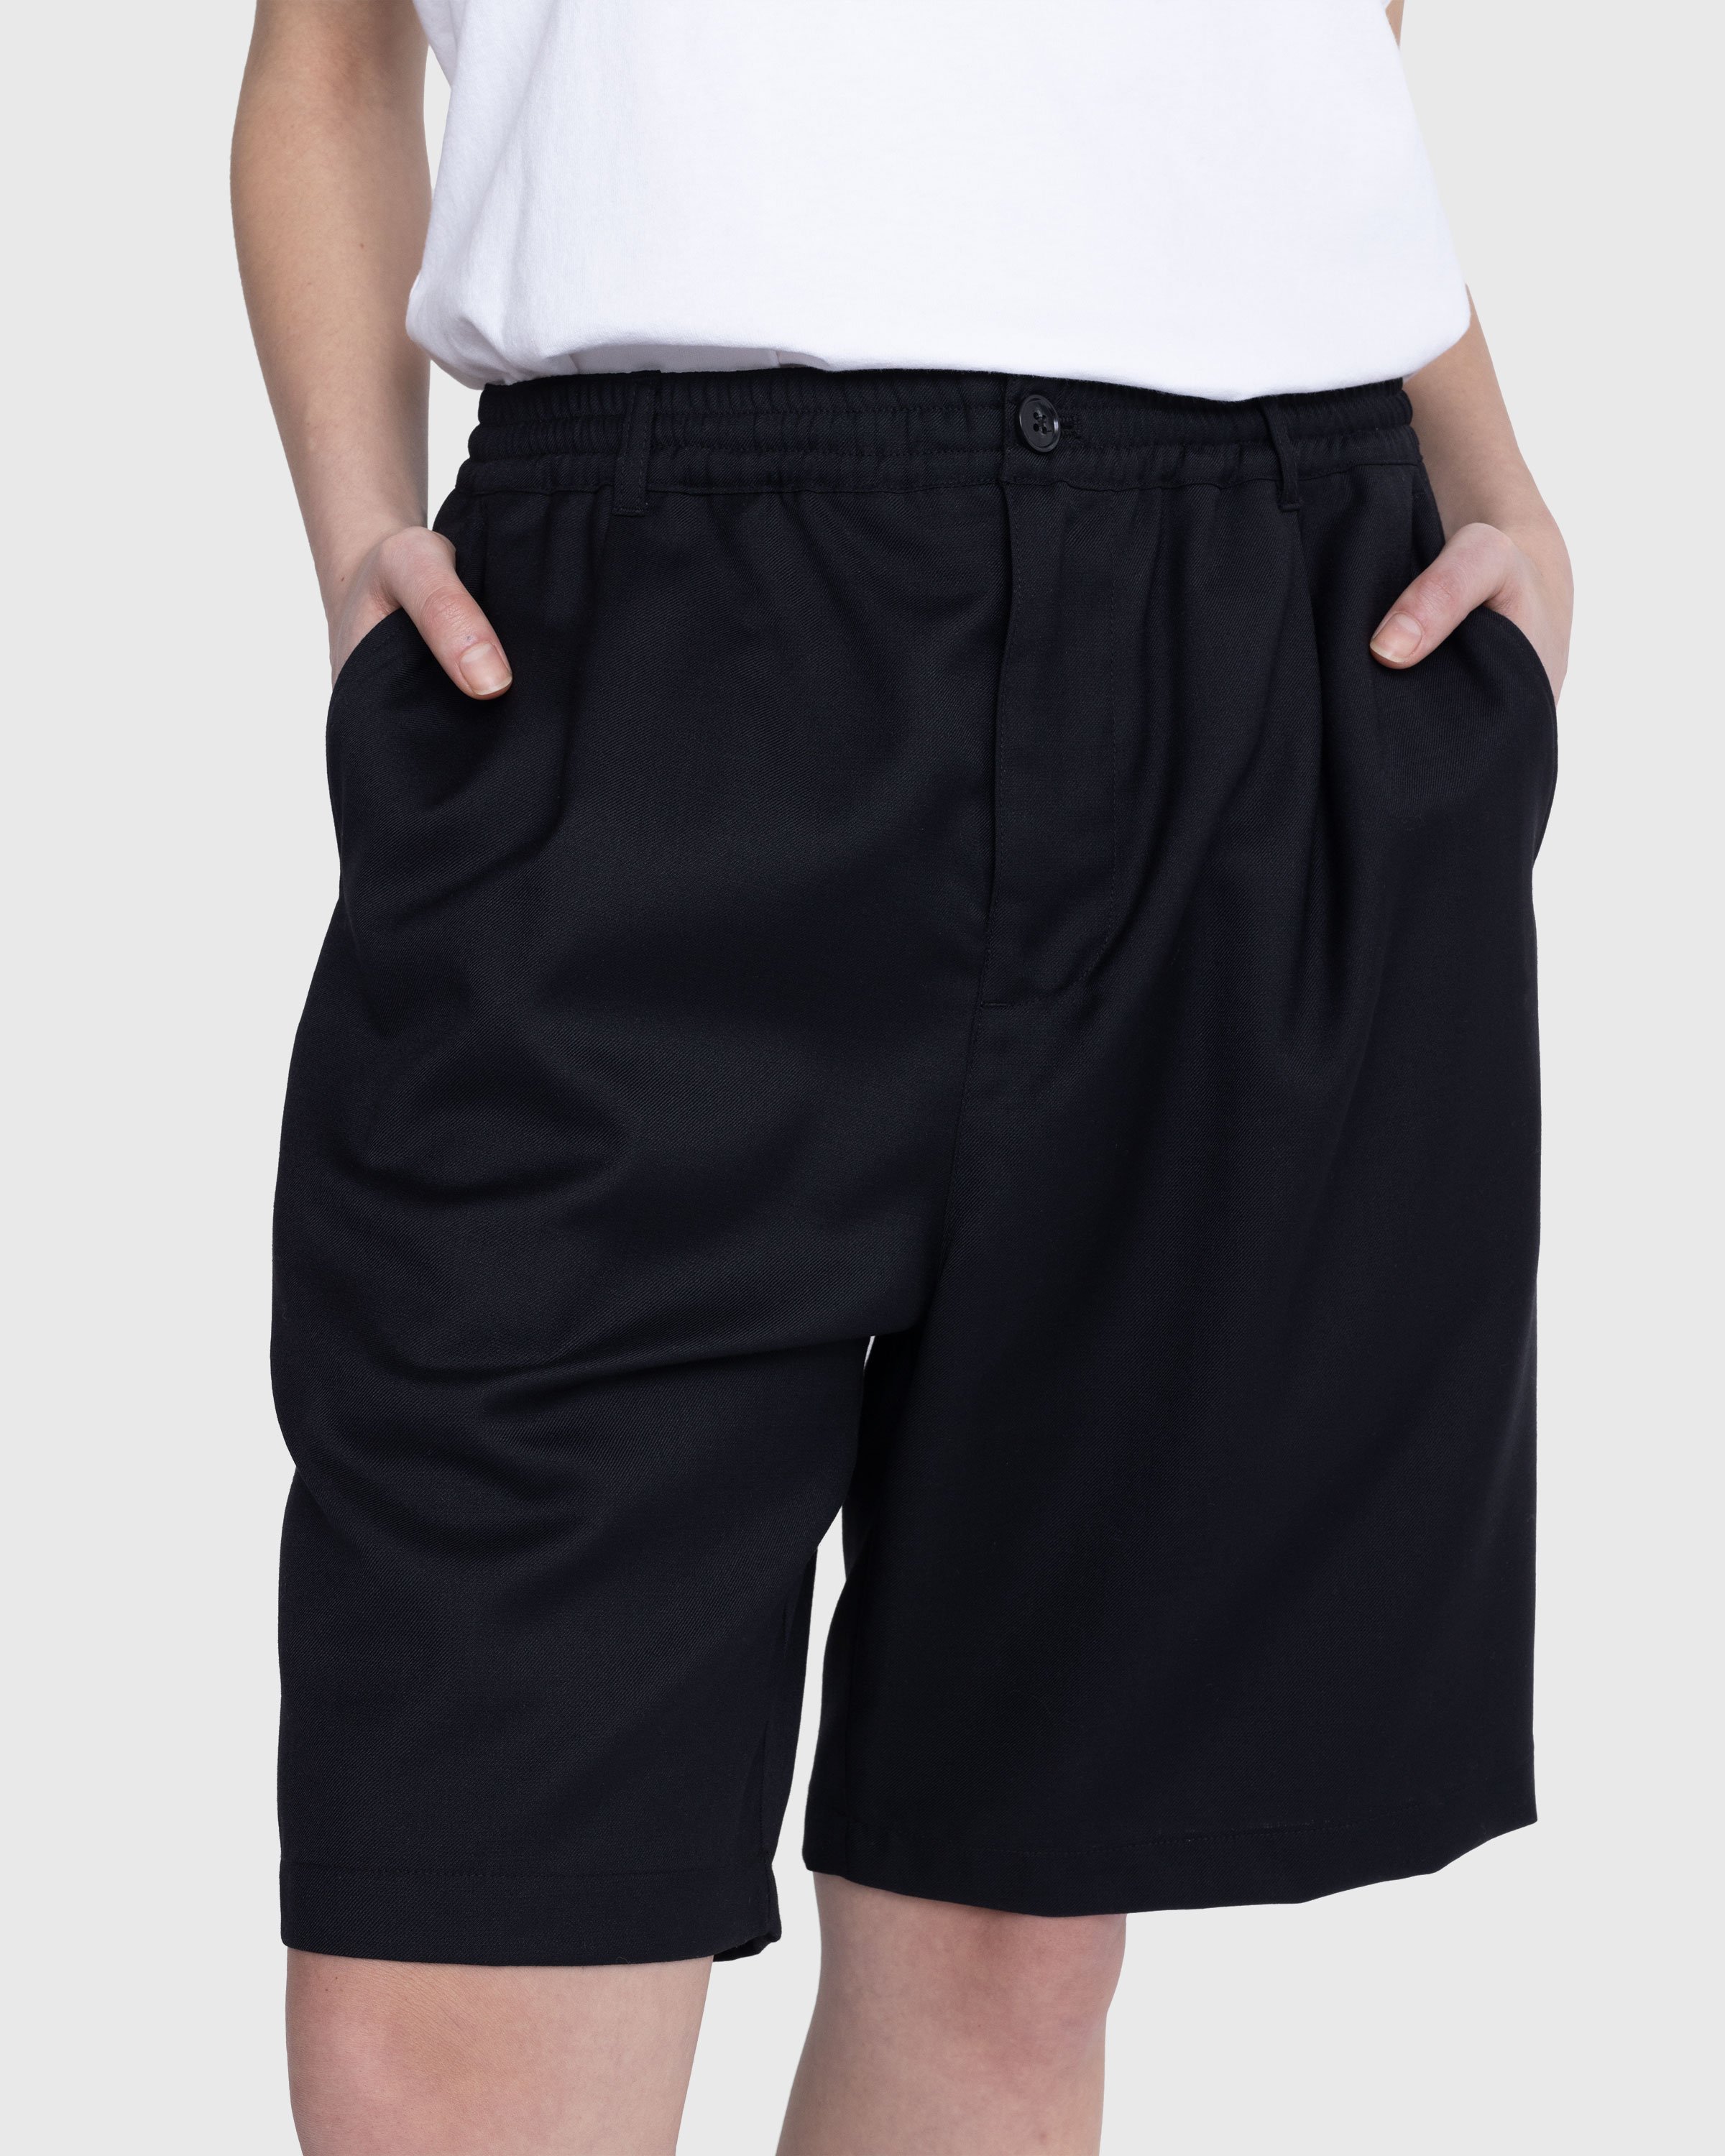 Highsnobiety - Tropical Wool Elastic Shorts Black - Clothing - Black - Image 10